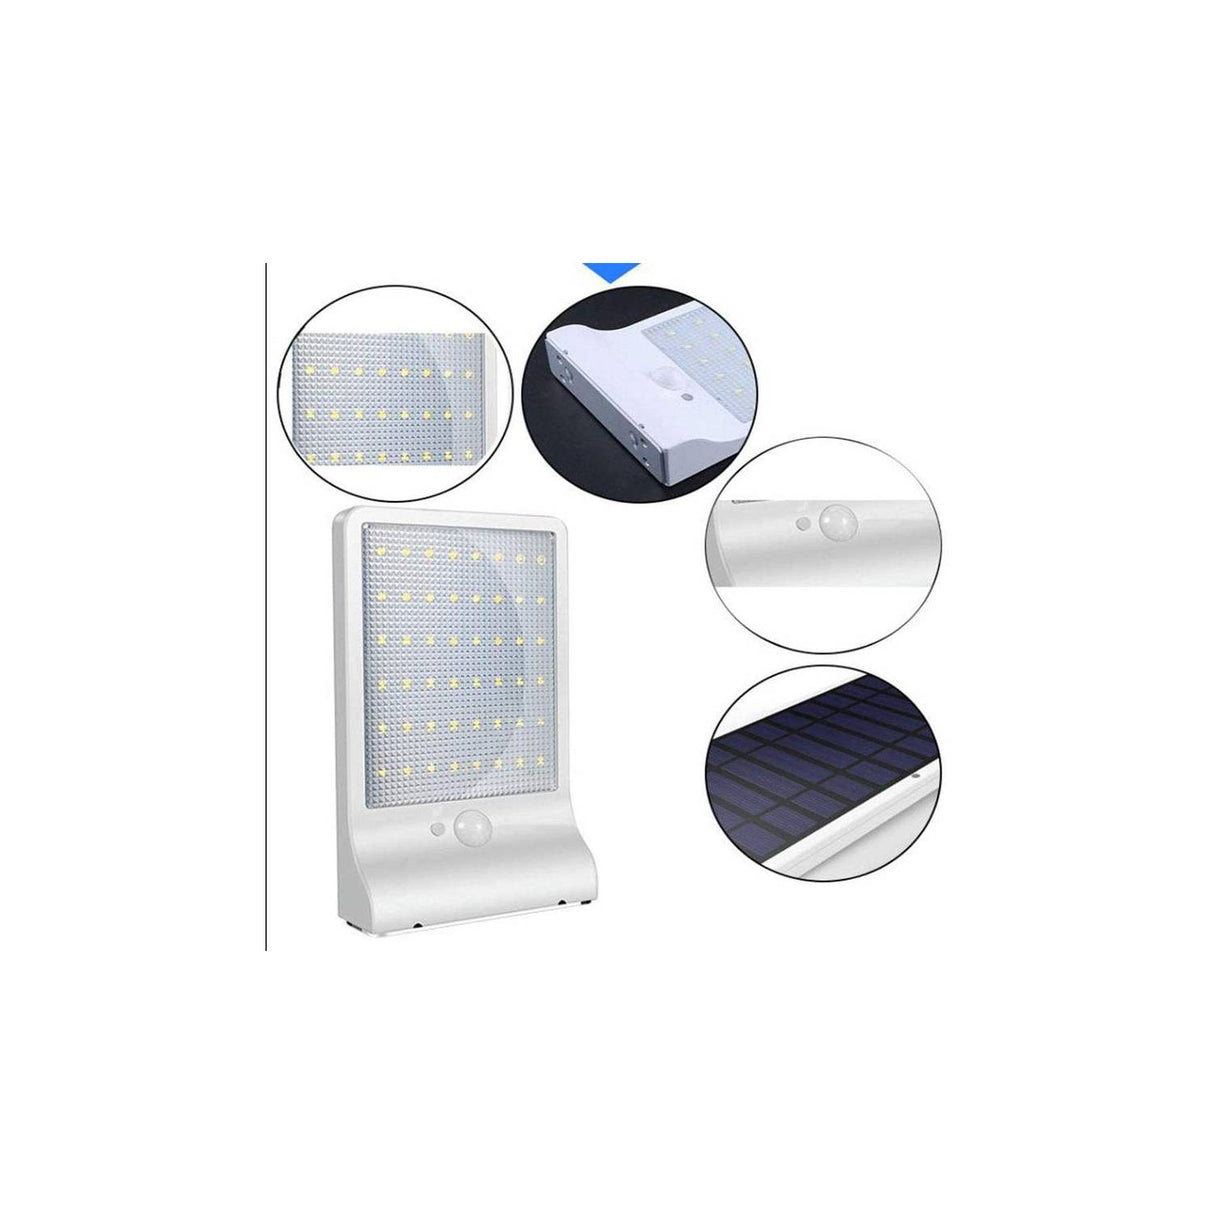 2 piezas lámpara solar para pared con 48 led y control remoto. (OPENBOX)